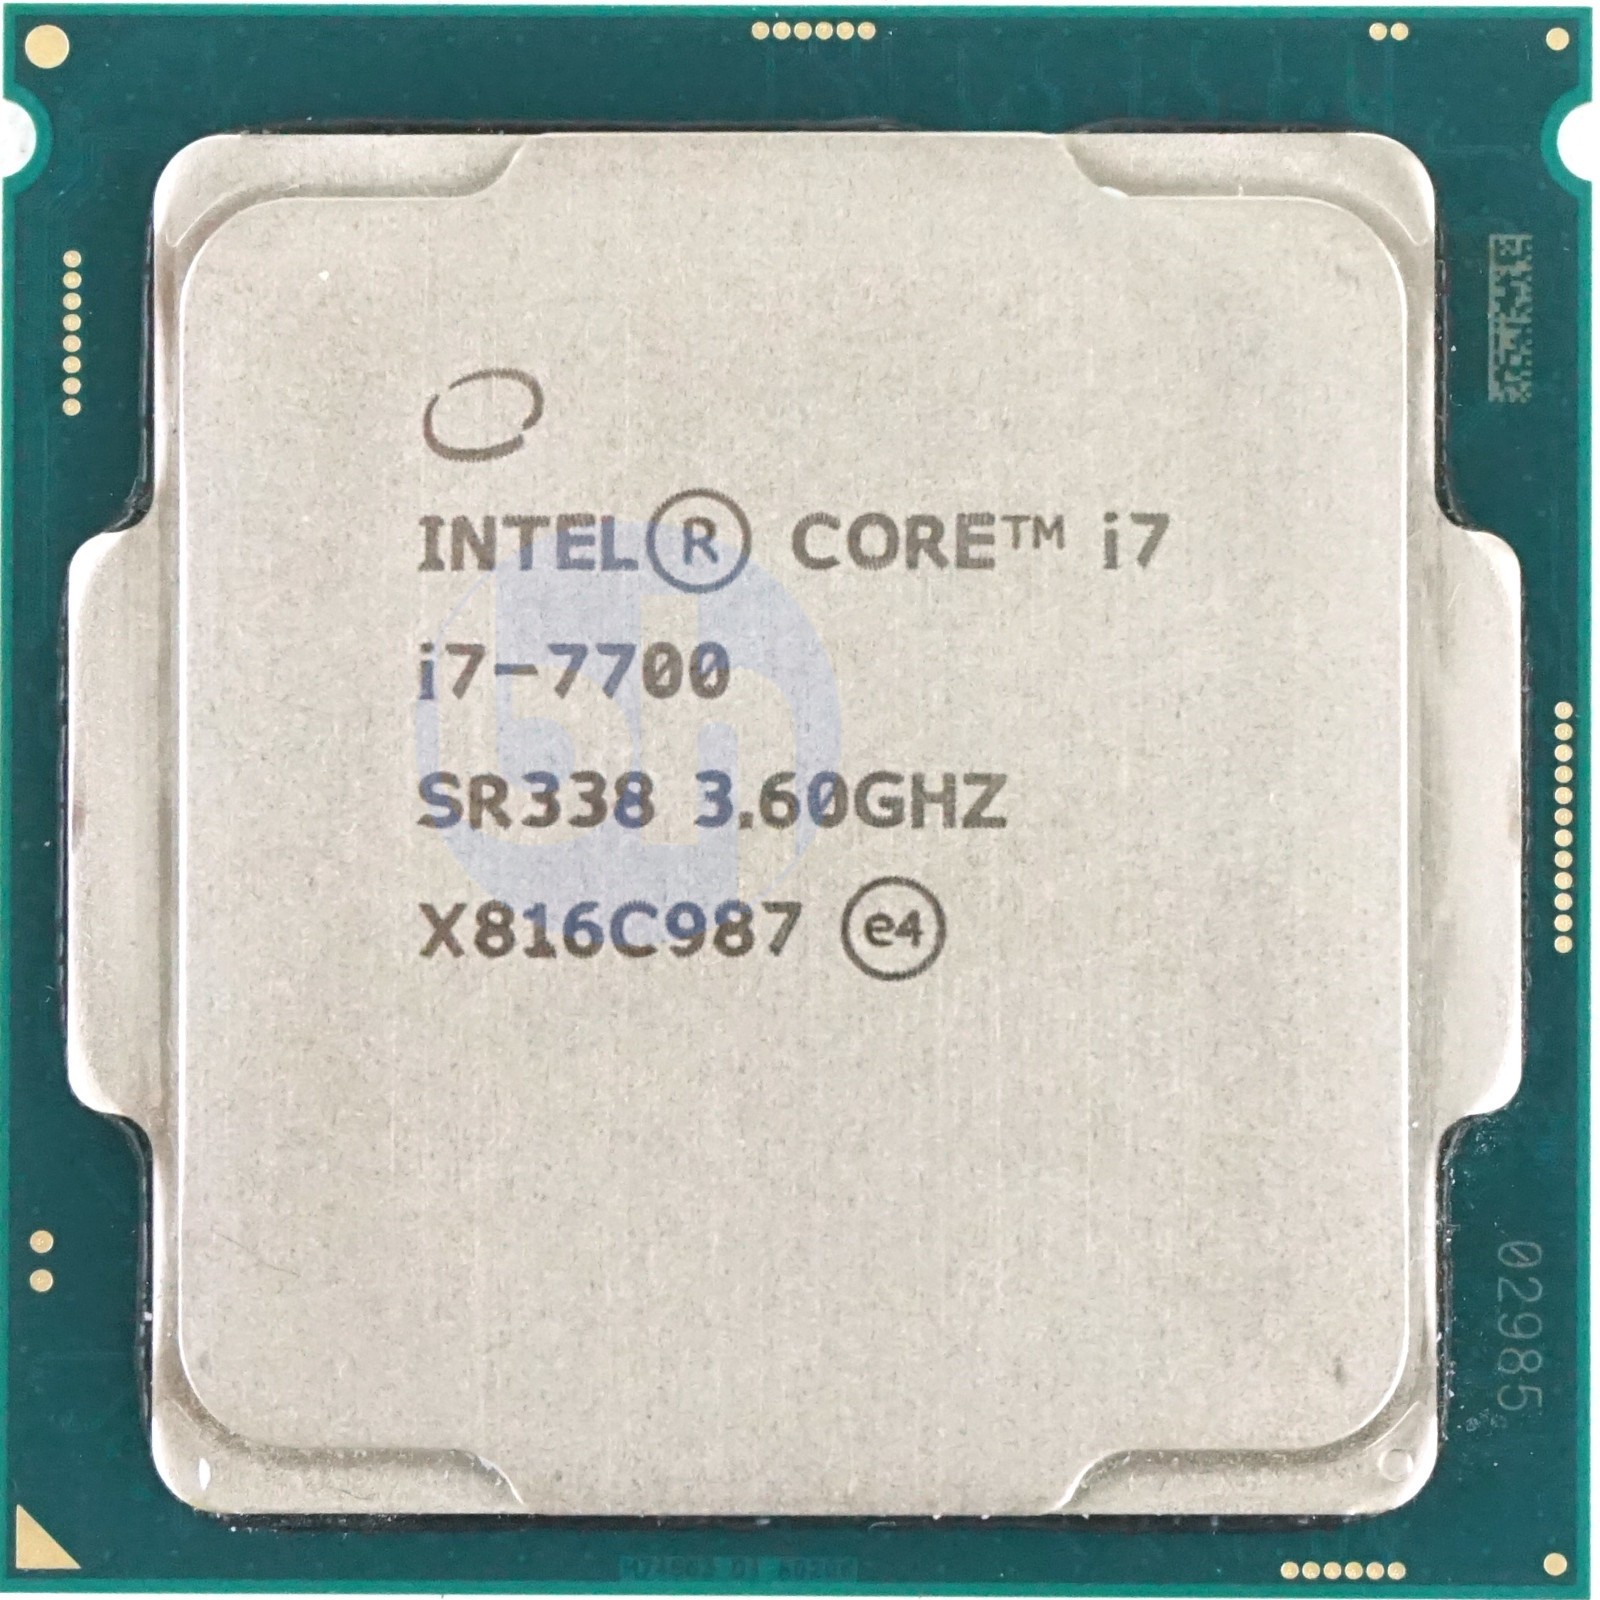 動作確認済みの中古品ですIntel Core i7-7700 3.60GHz CPU - PCパーツ